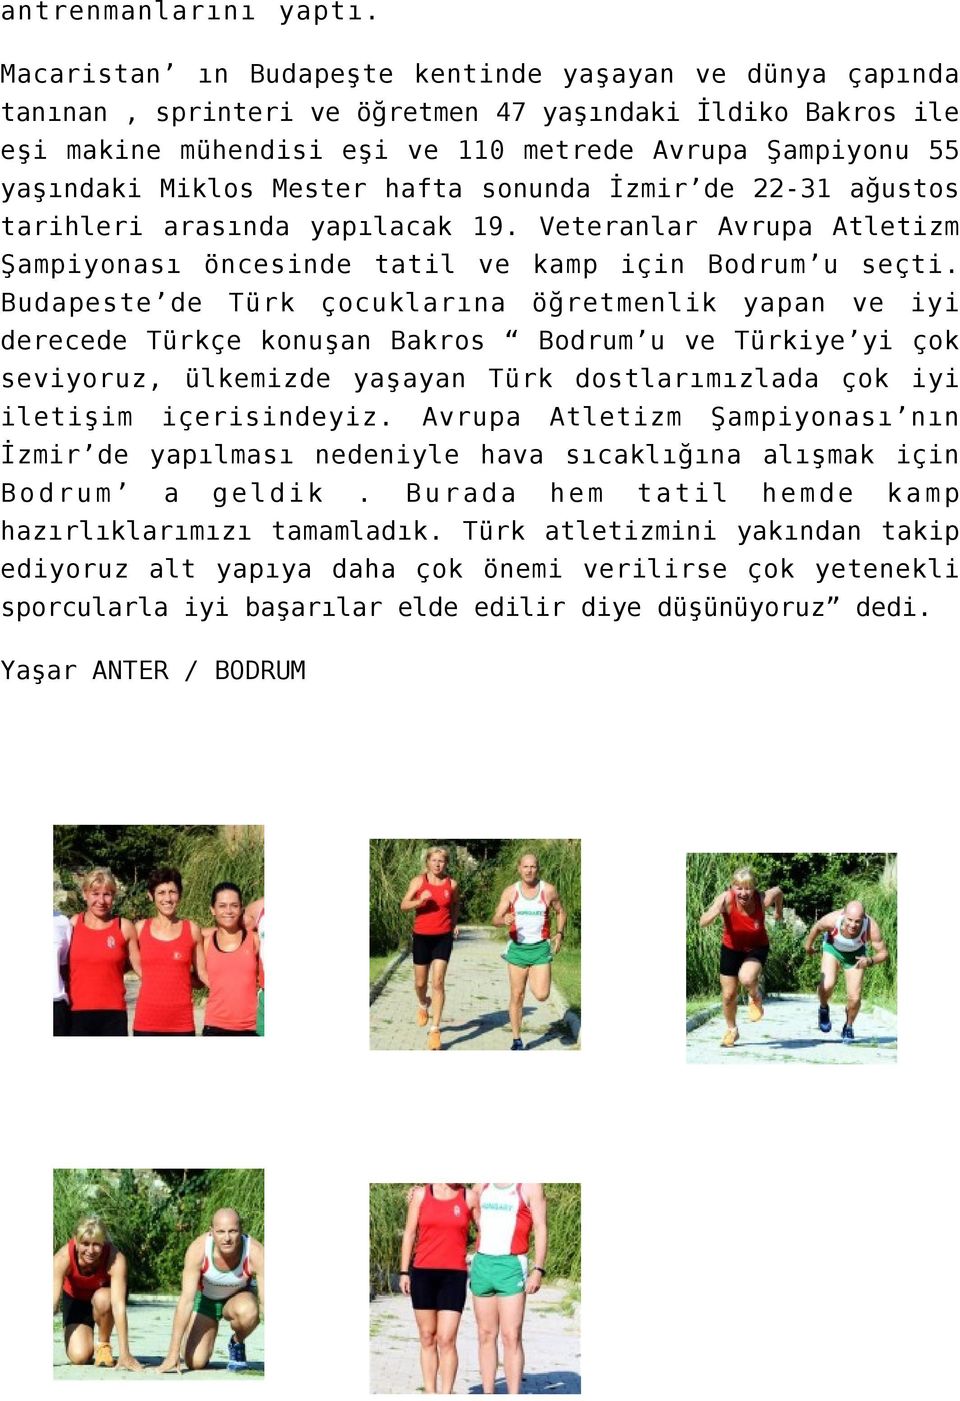 Mester hafta sonunda İzmir de 22-31 ağustos tarihleri arasında yapılacak 19. Veteranlar Avrupa Atletizm Şampiyonası öncesinde tatil ve kamp için Bodrum u seçti.